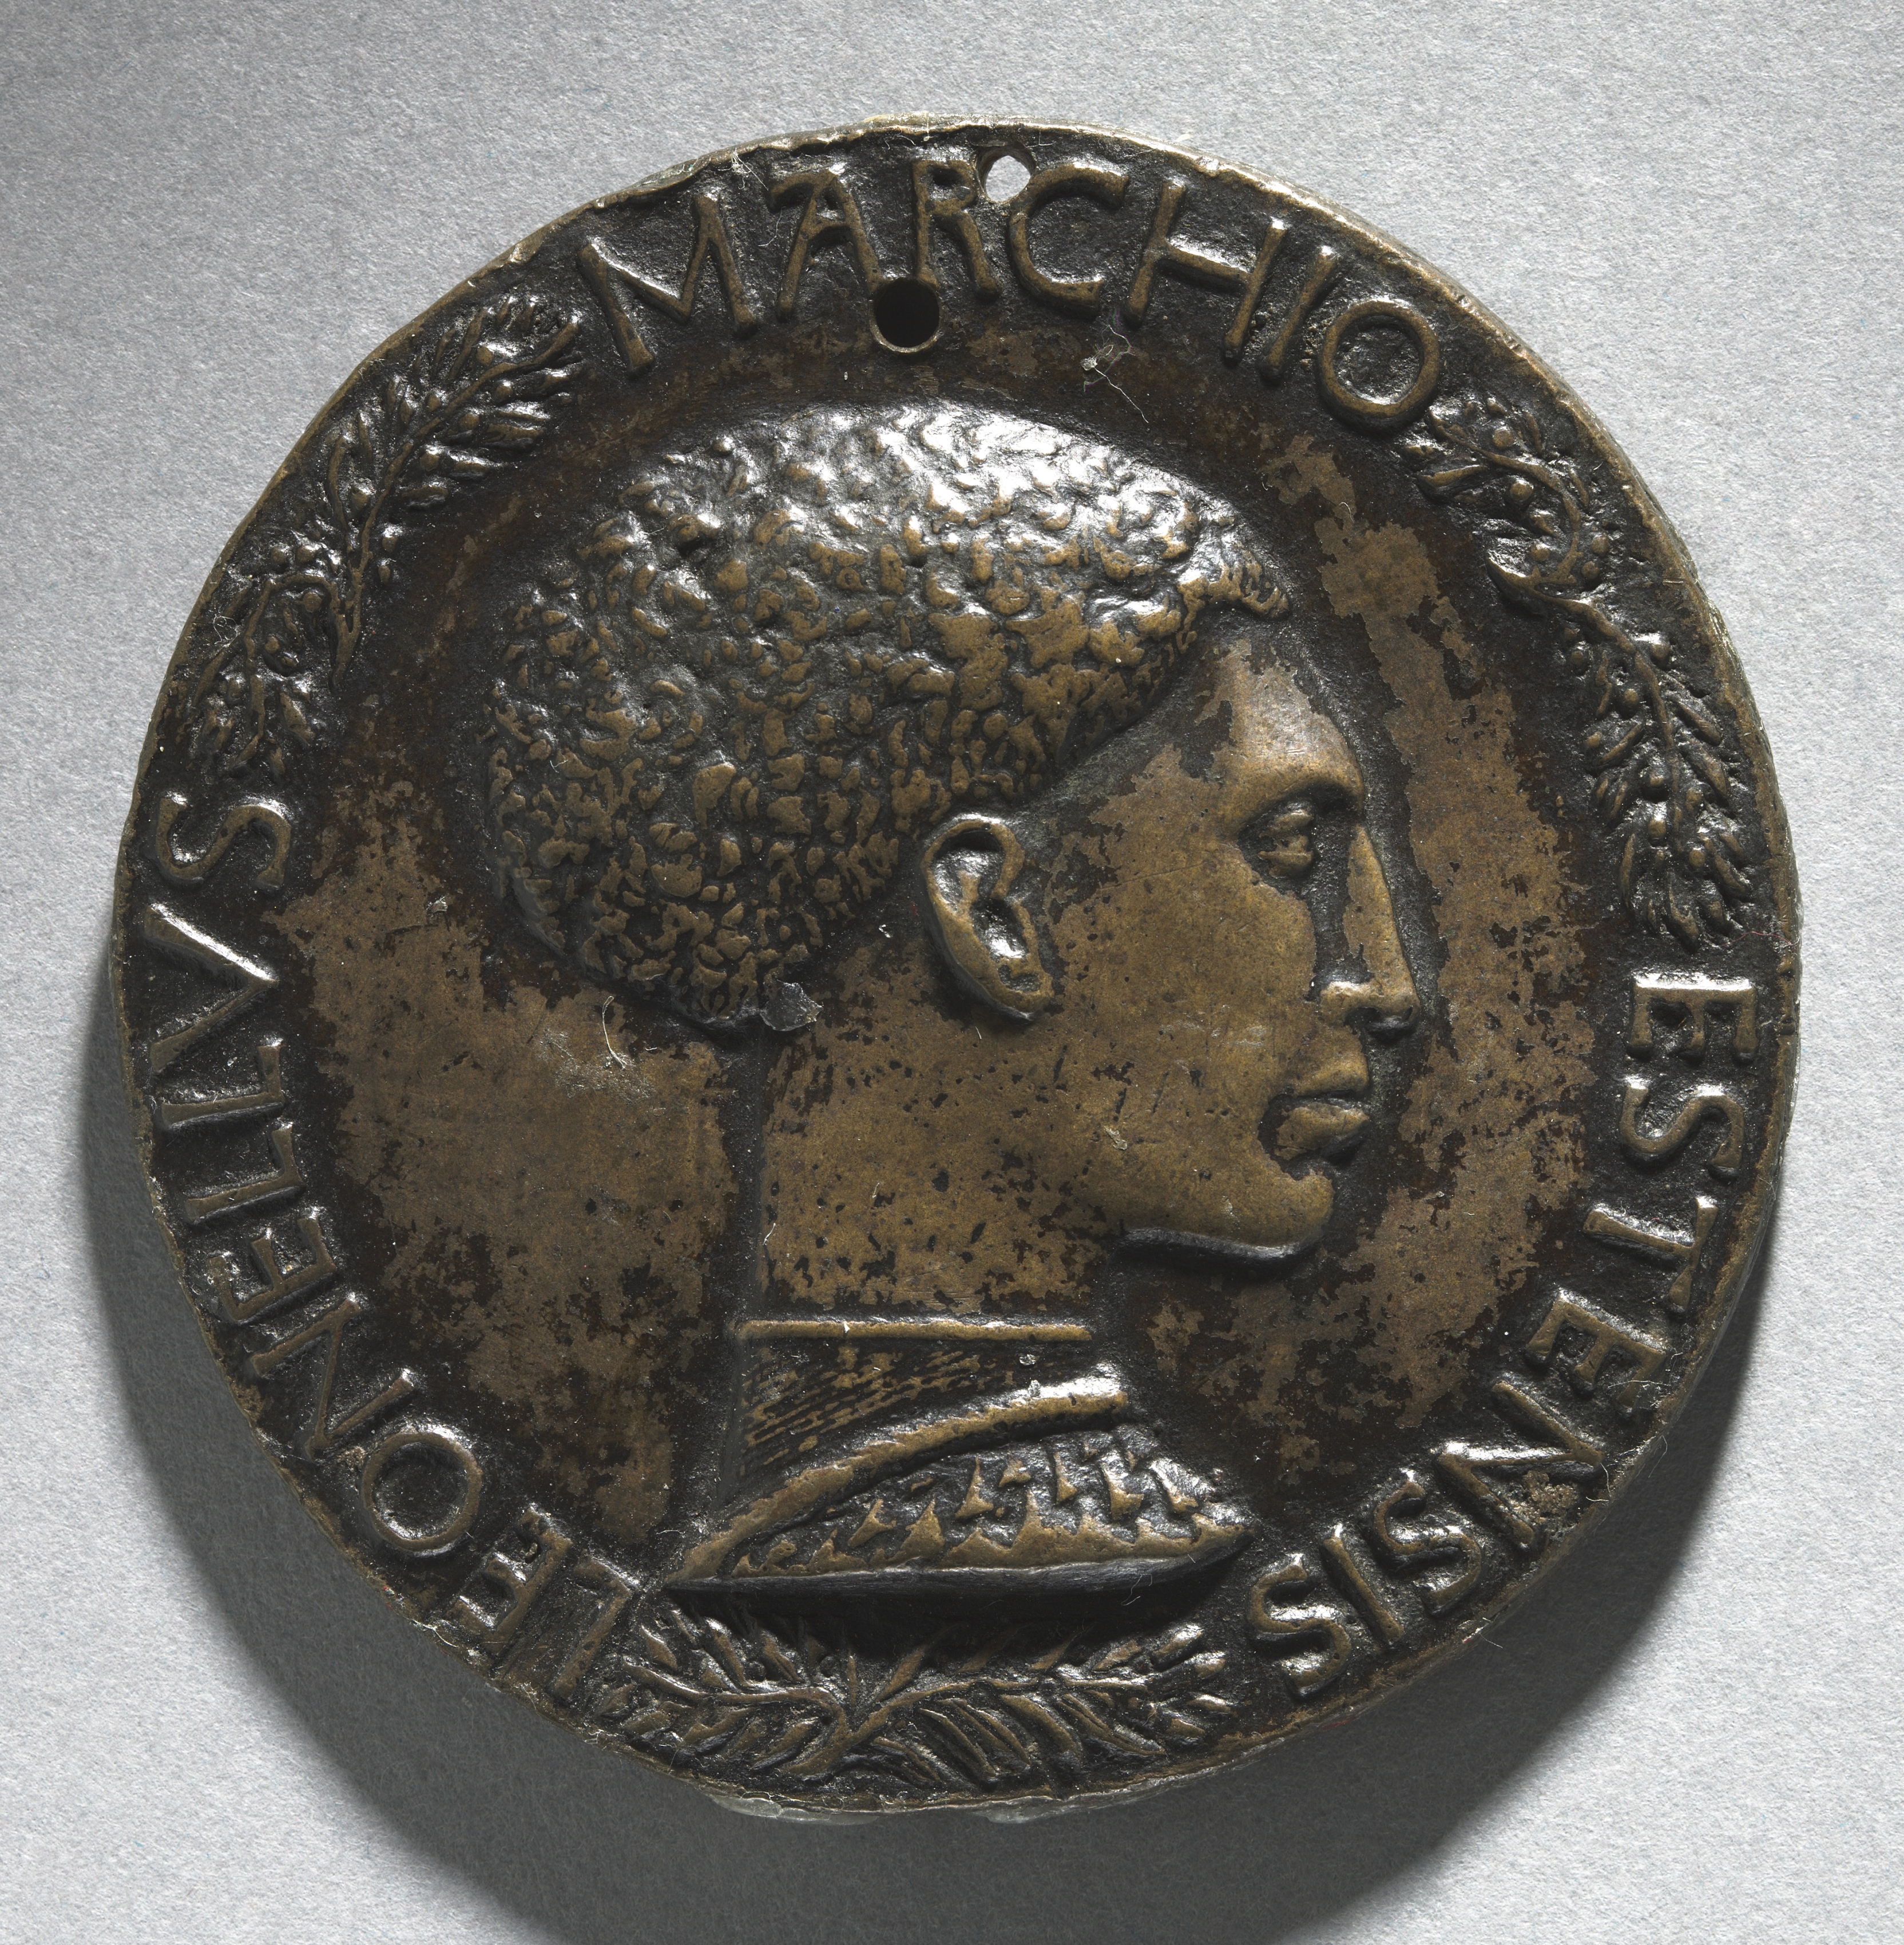 Portrait of Leonello D'Este, Marquess of Ferrara (obverse)